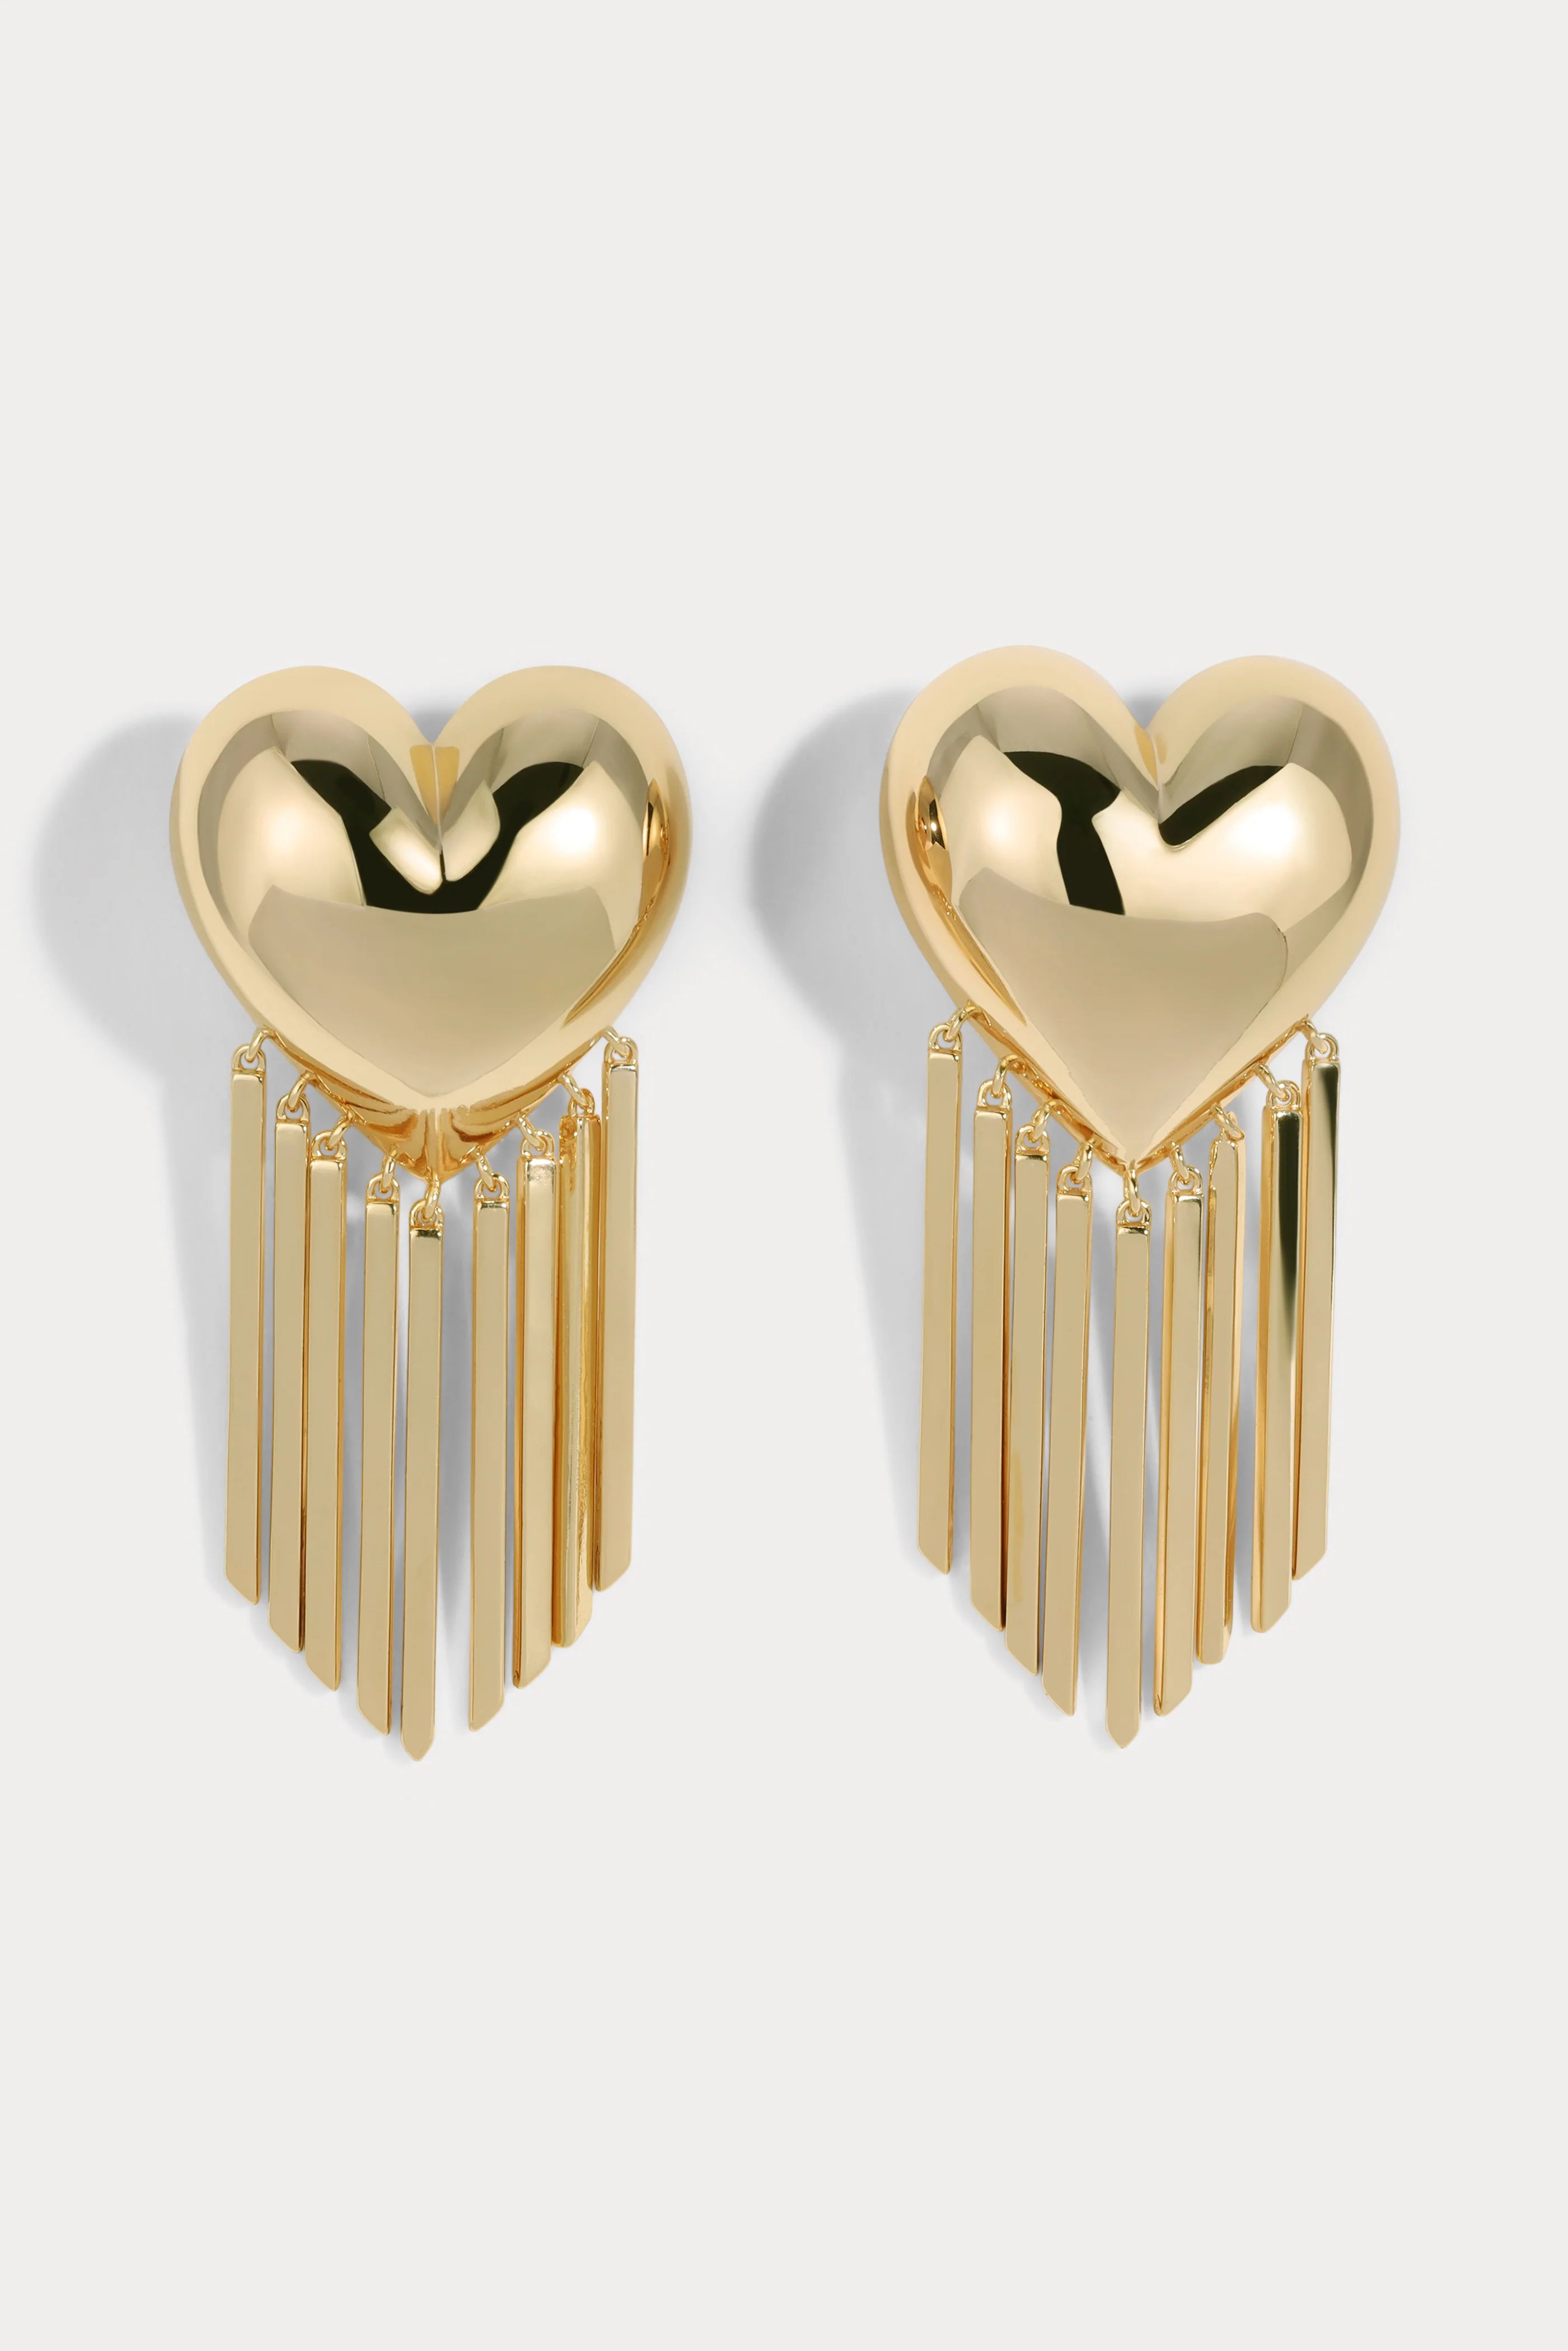 Bubble Heart Fringe Earrings | Lili Claspe